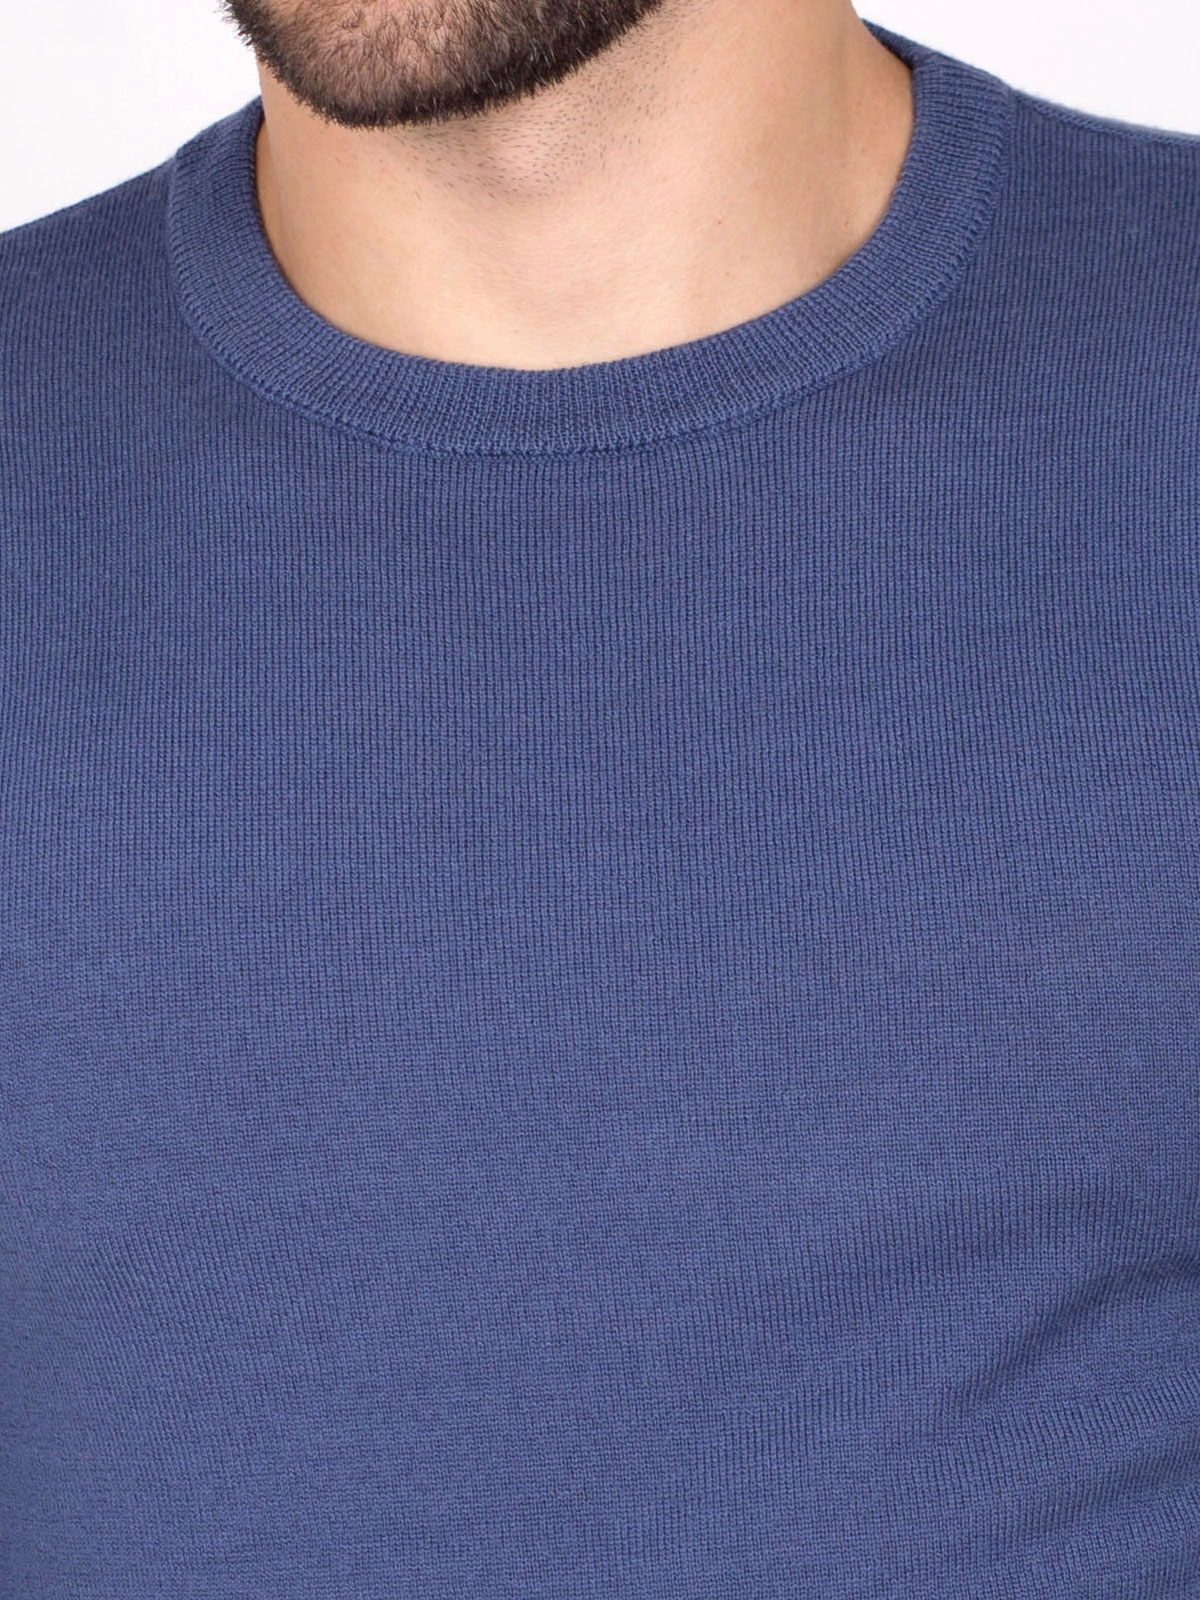 Мъжки пуловер с мерино в синьо - 33087 89.00 лв img2